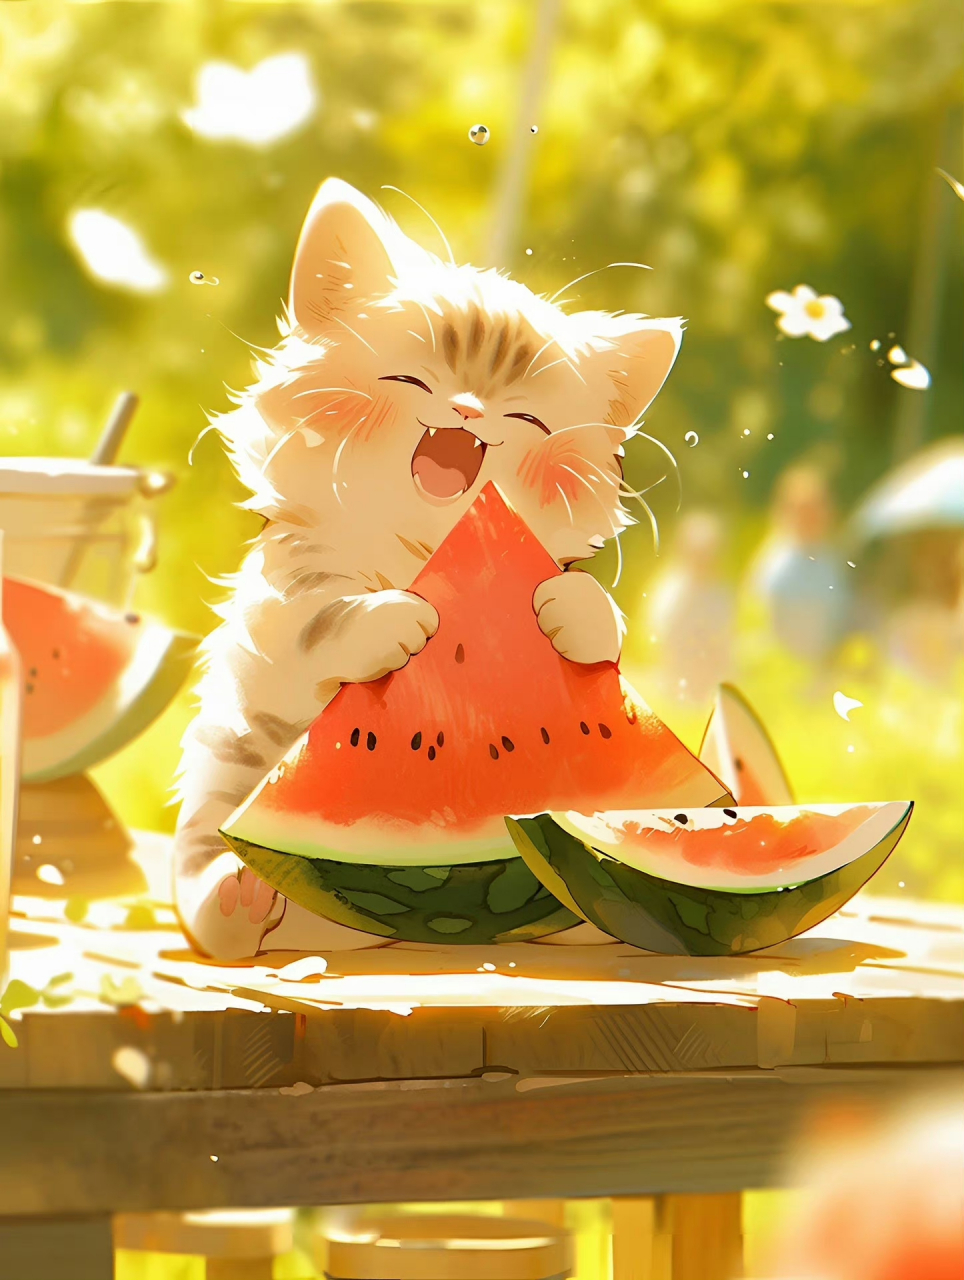 吃西瓜的小猫咪[期待]